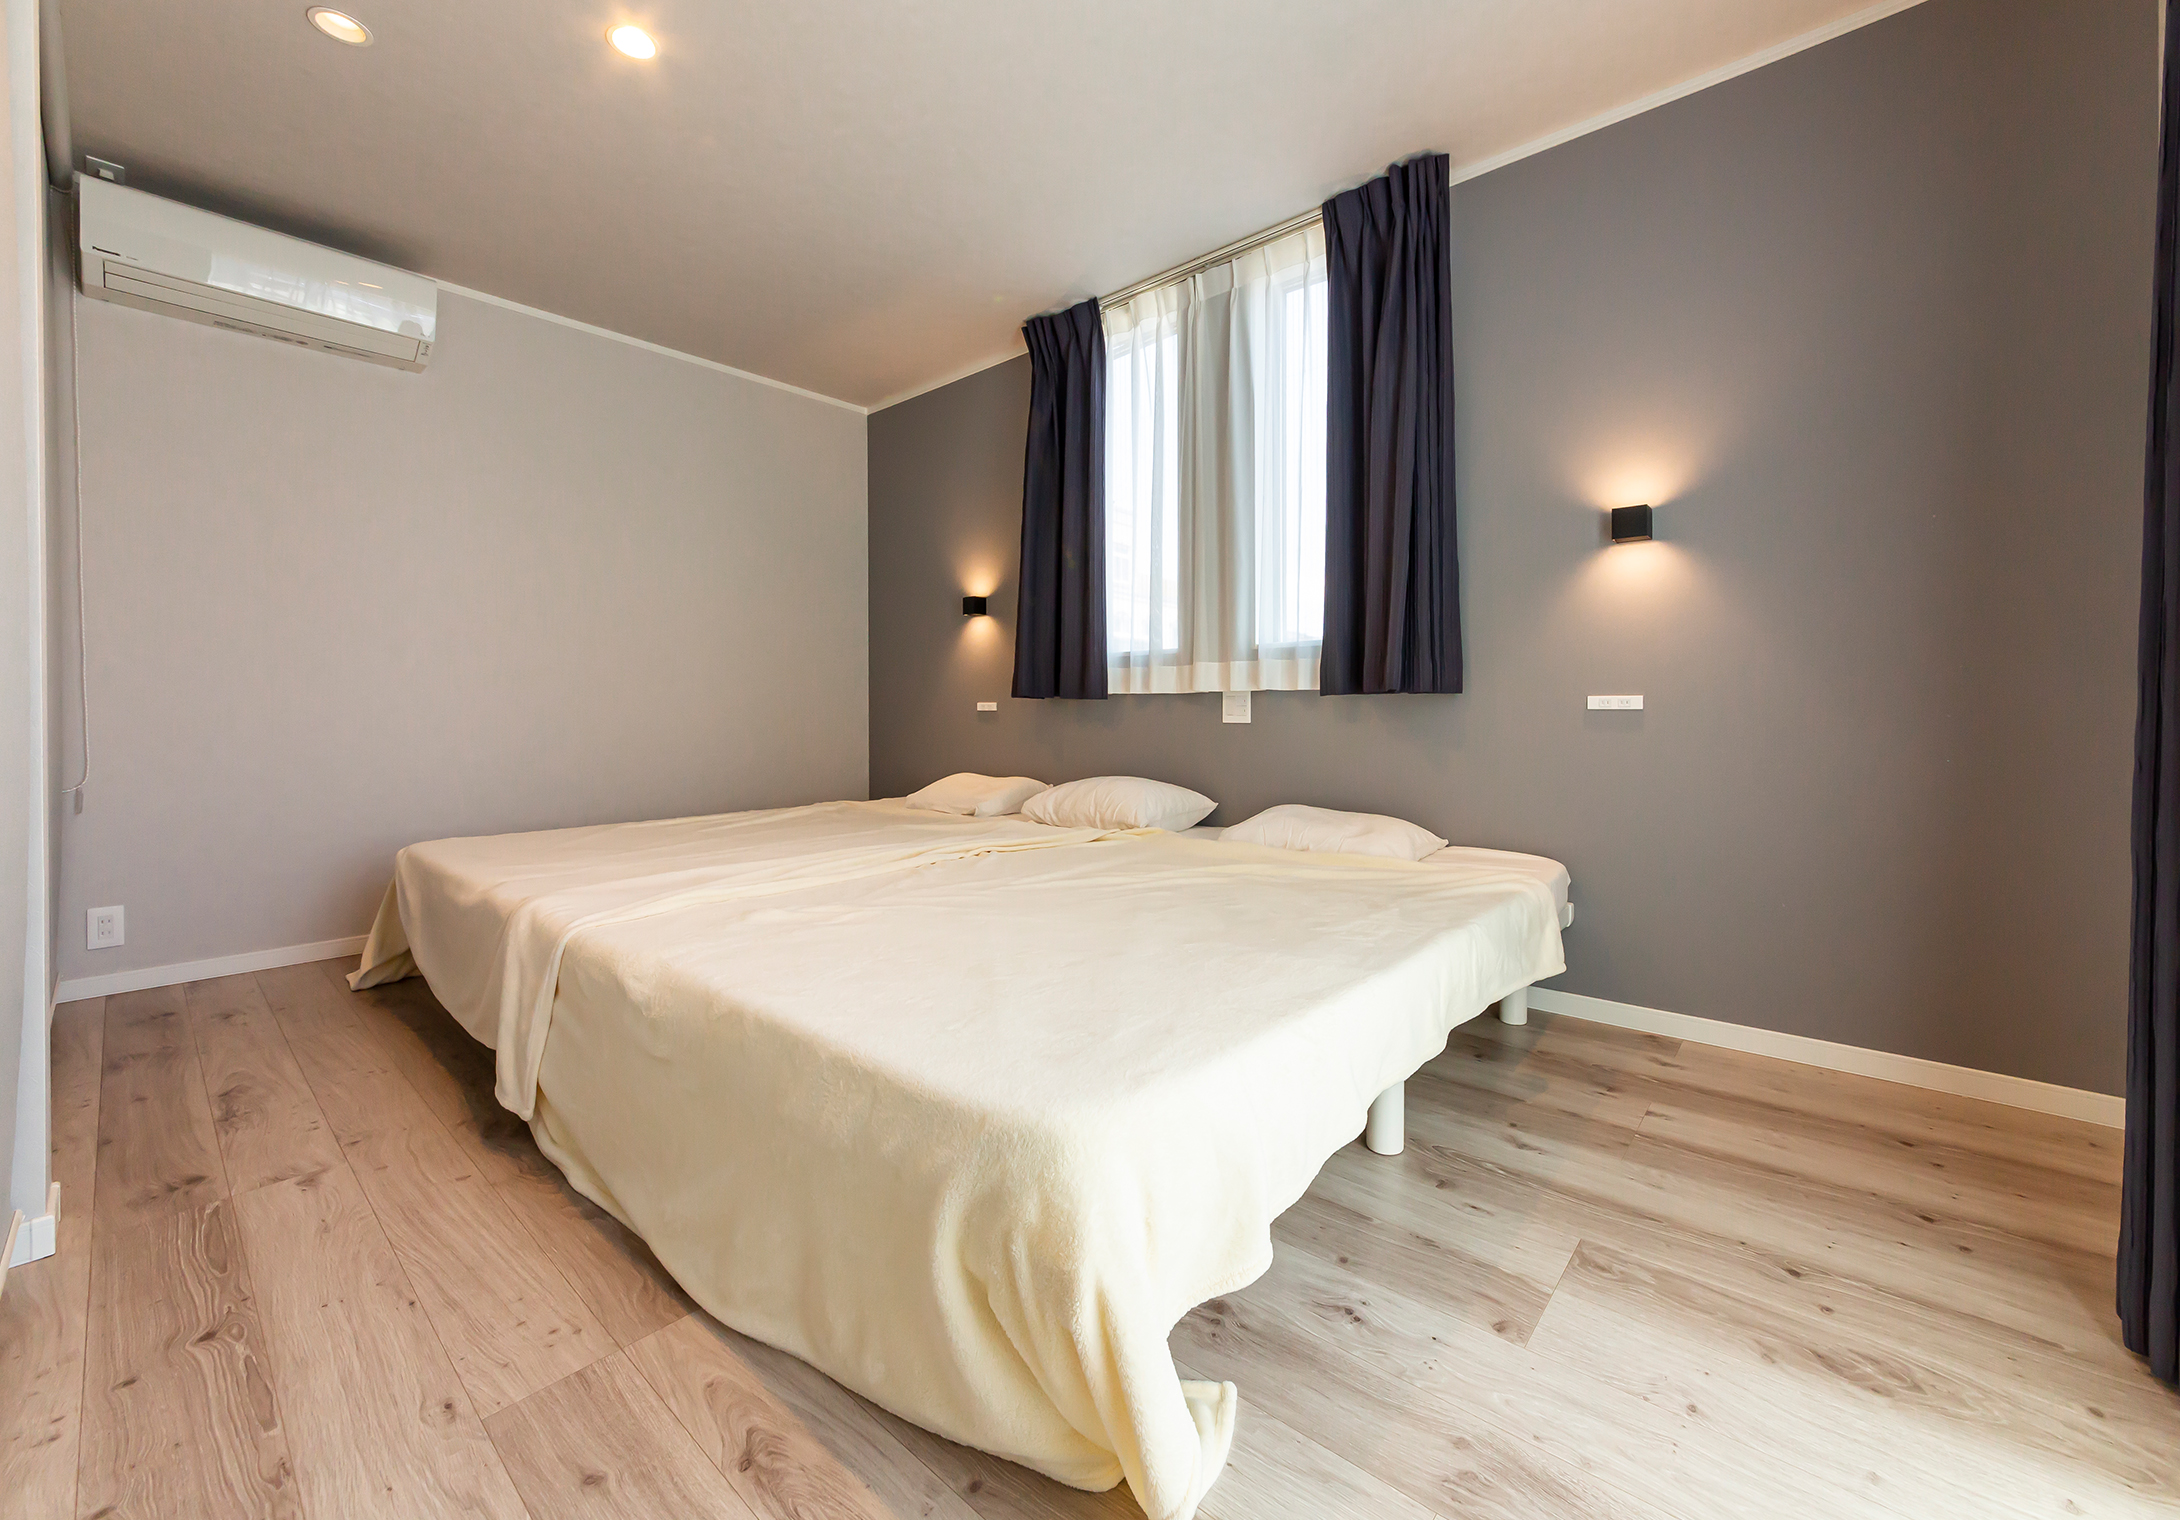 明るい色調で落ち着いた雰囲気の寝室。7.6畳の広さがあり、ゆったりと寛げる